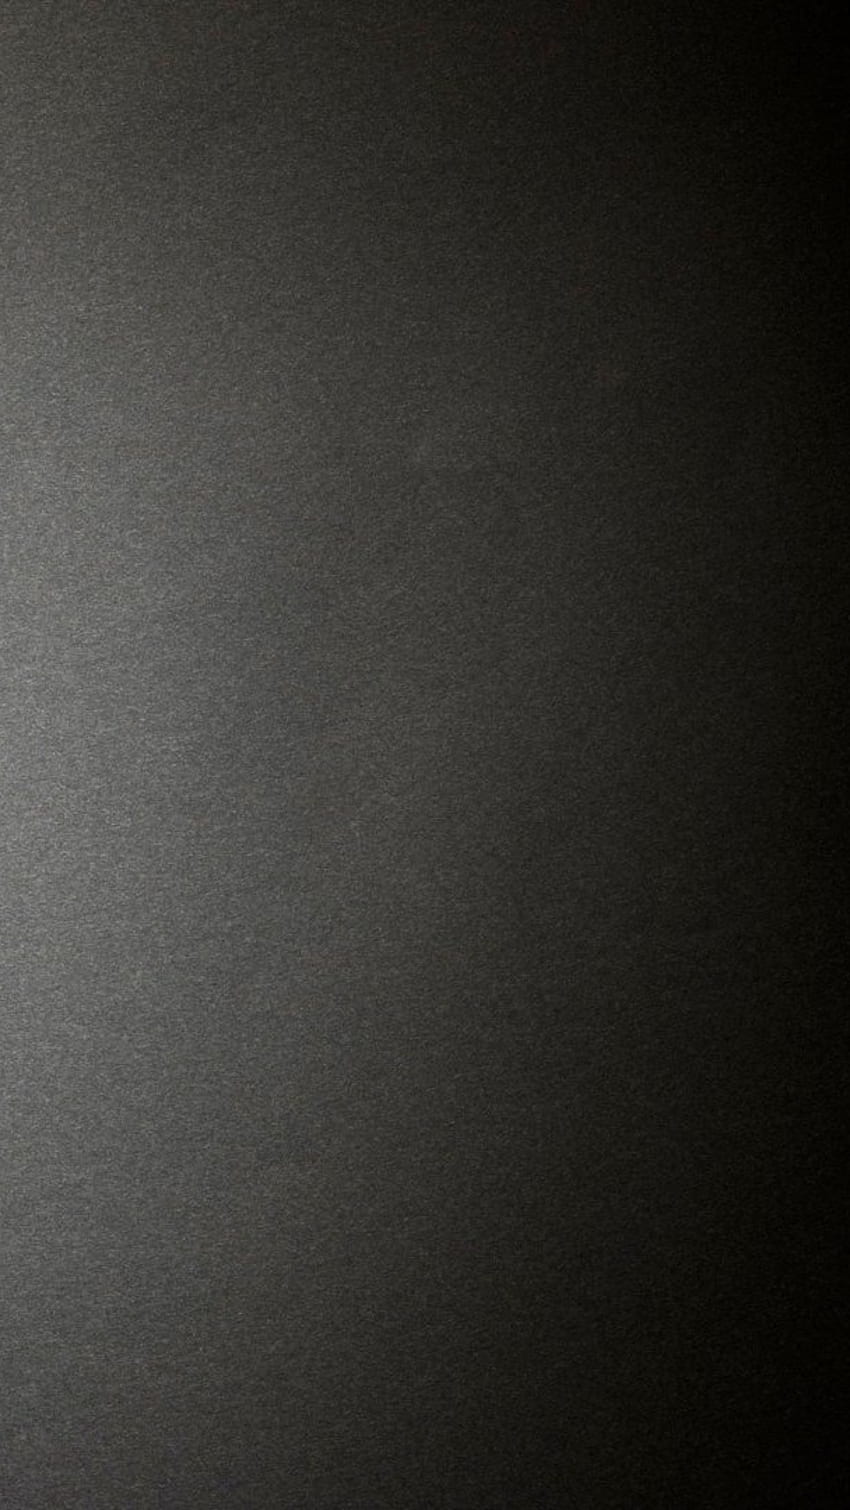 Plain, Dark Grey, Matte Texture HD phone wallpaper